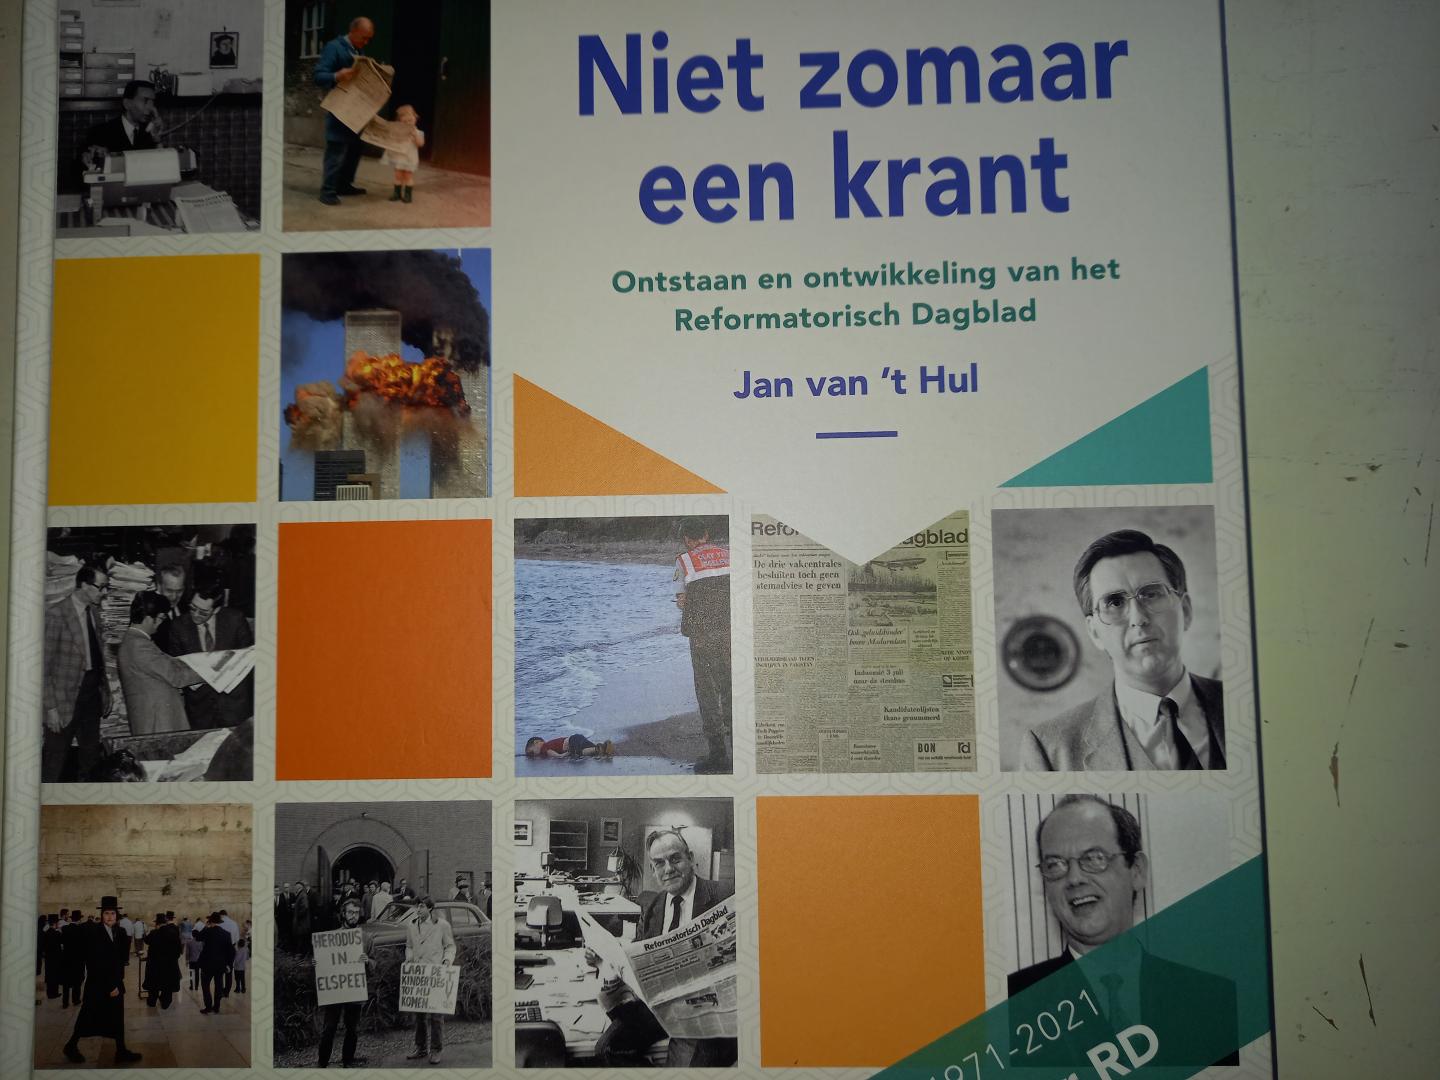 Van 't Hul, Jan - Nier zomaar een krant -(Ontstaan en ontwikkeling van het Reformatorisch Dagblad 1971-2001)